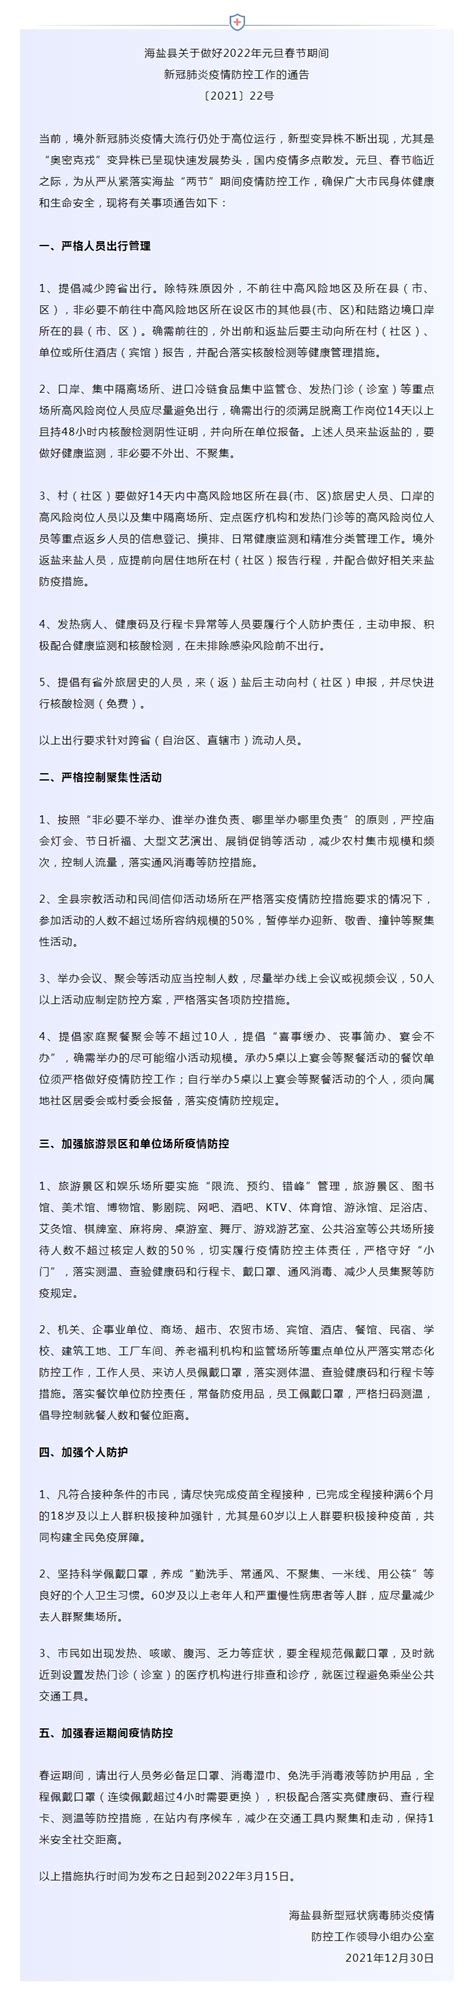 海盐县关于做好2022年元旦春节期间新冠肺炎疫情防控工作的通告〔2021〕22号